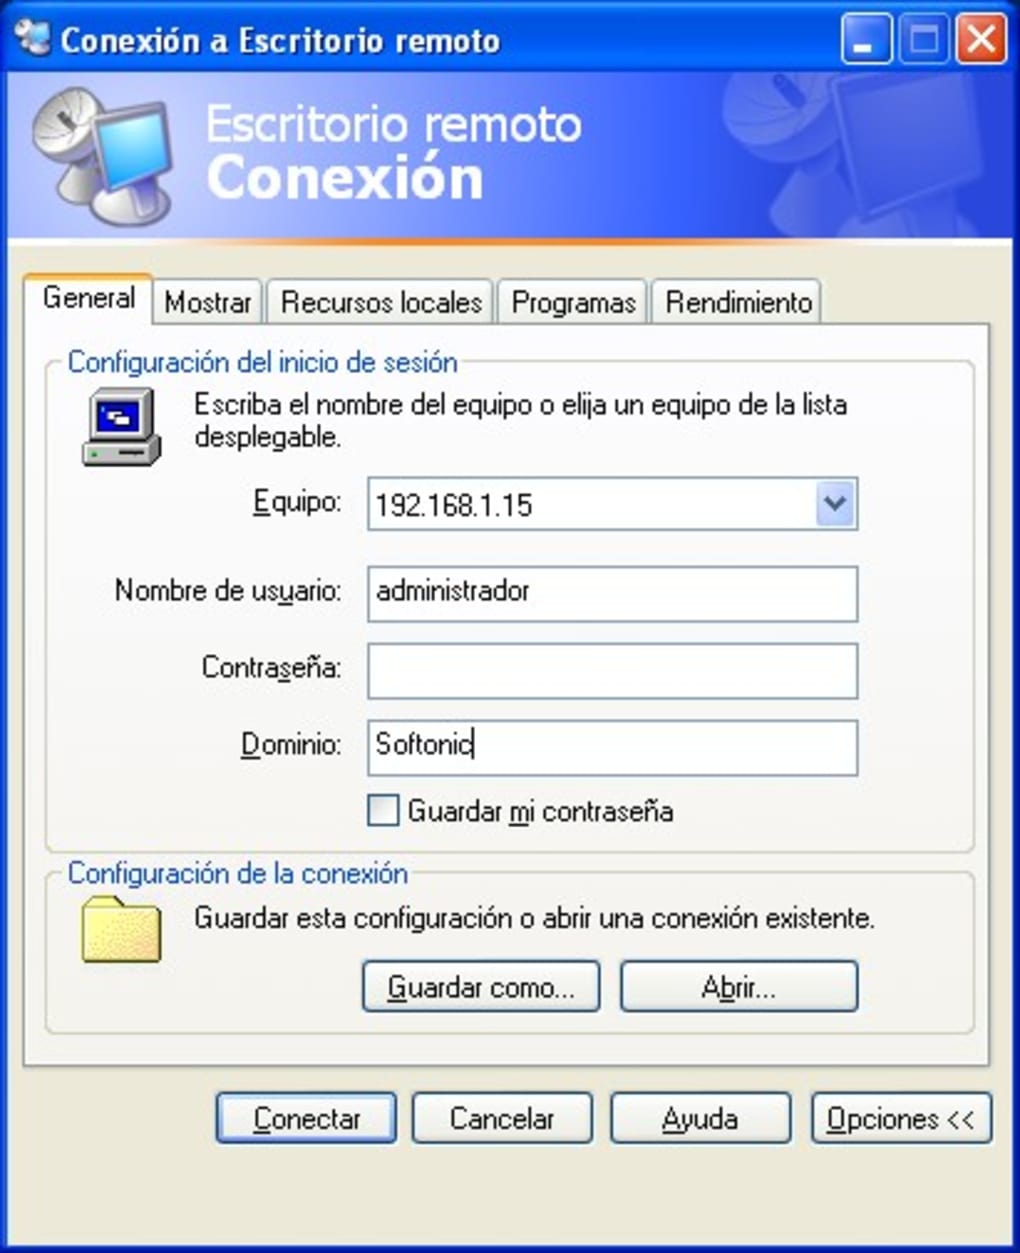 remote desktop manager 2.7 windows 10